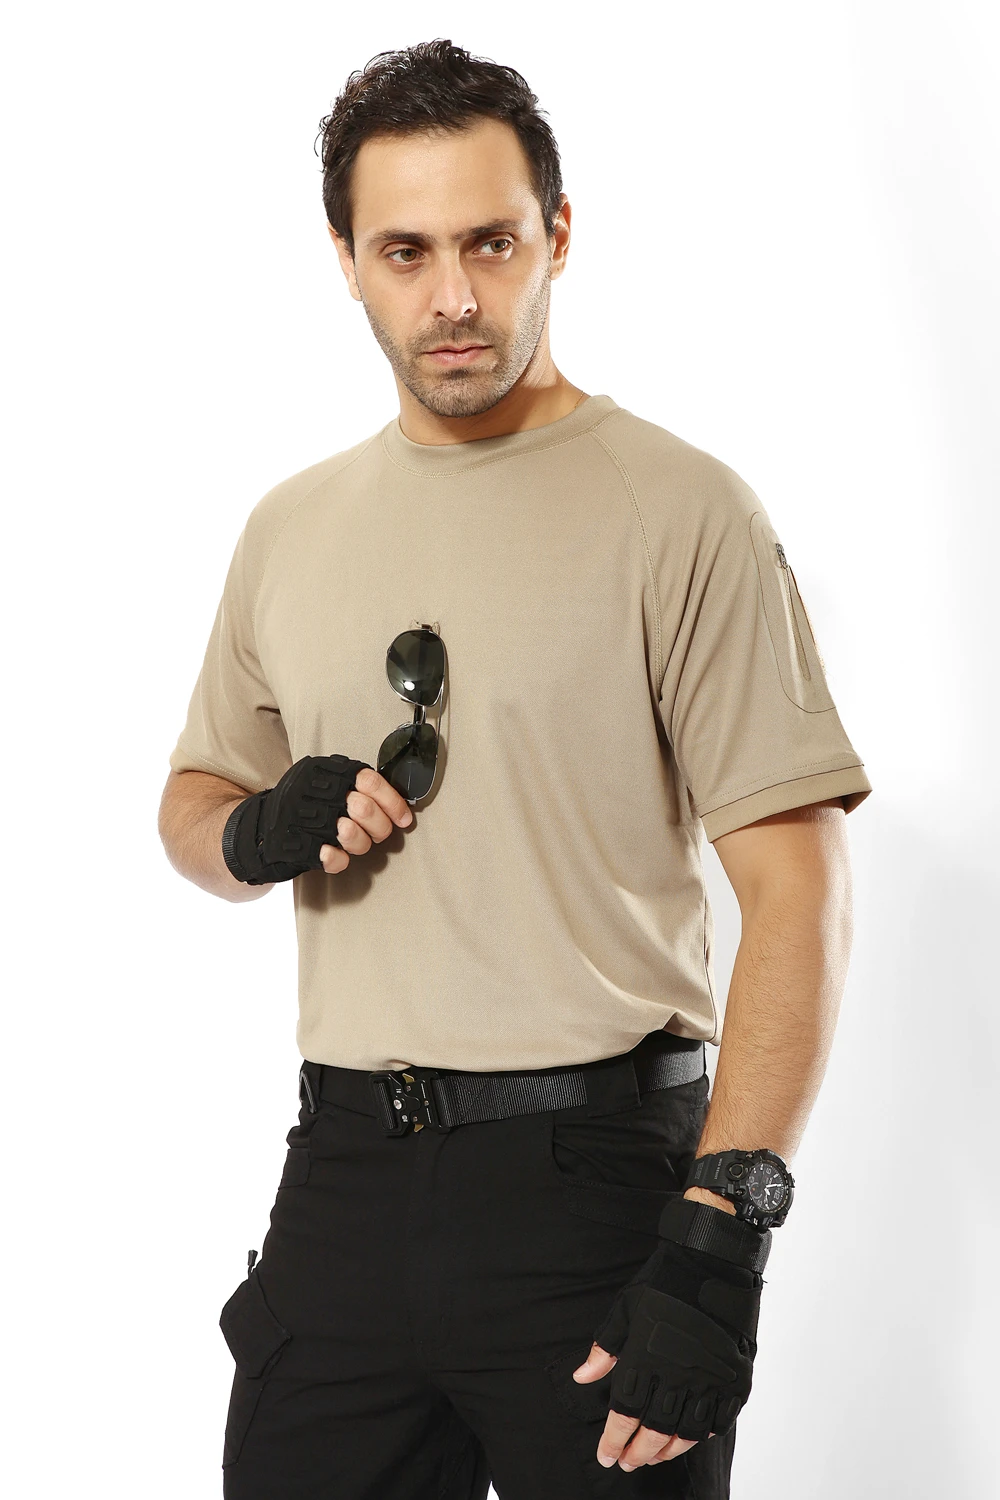 Летняя мужская Спортивная камуфляжная футболка с короткими рукавами, дышащие быстросохнущие футболки, походная охотничья рыболовная камуфляжная футболка